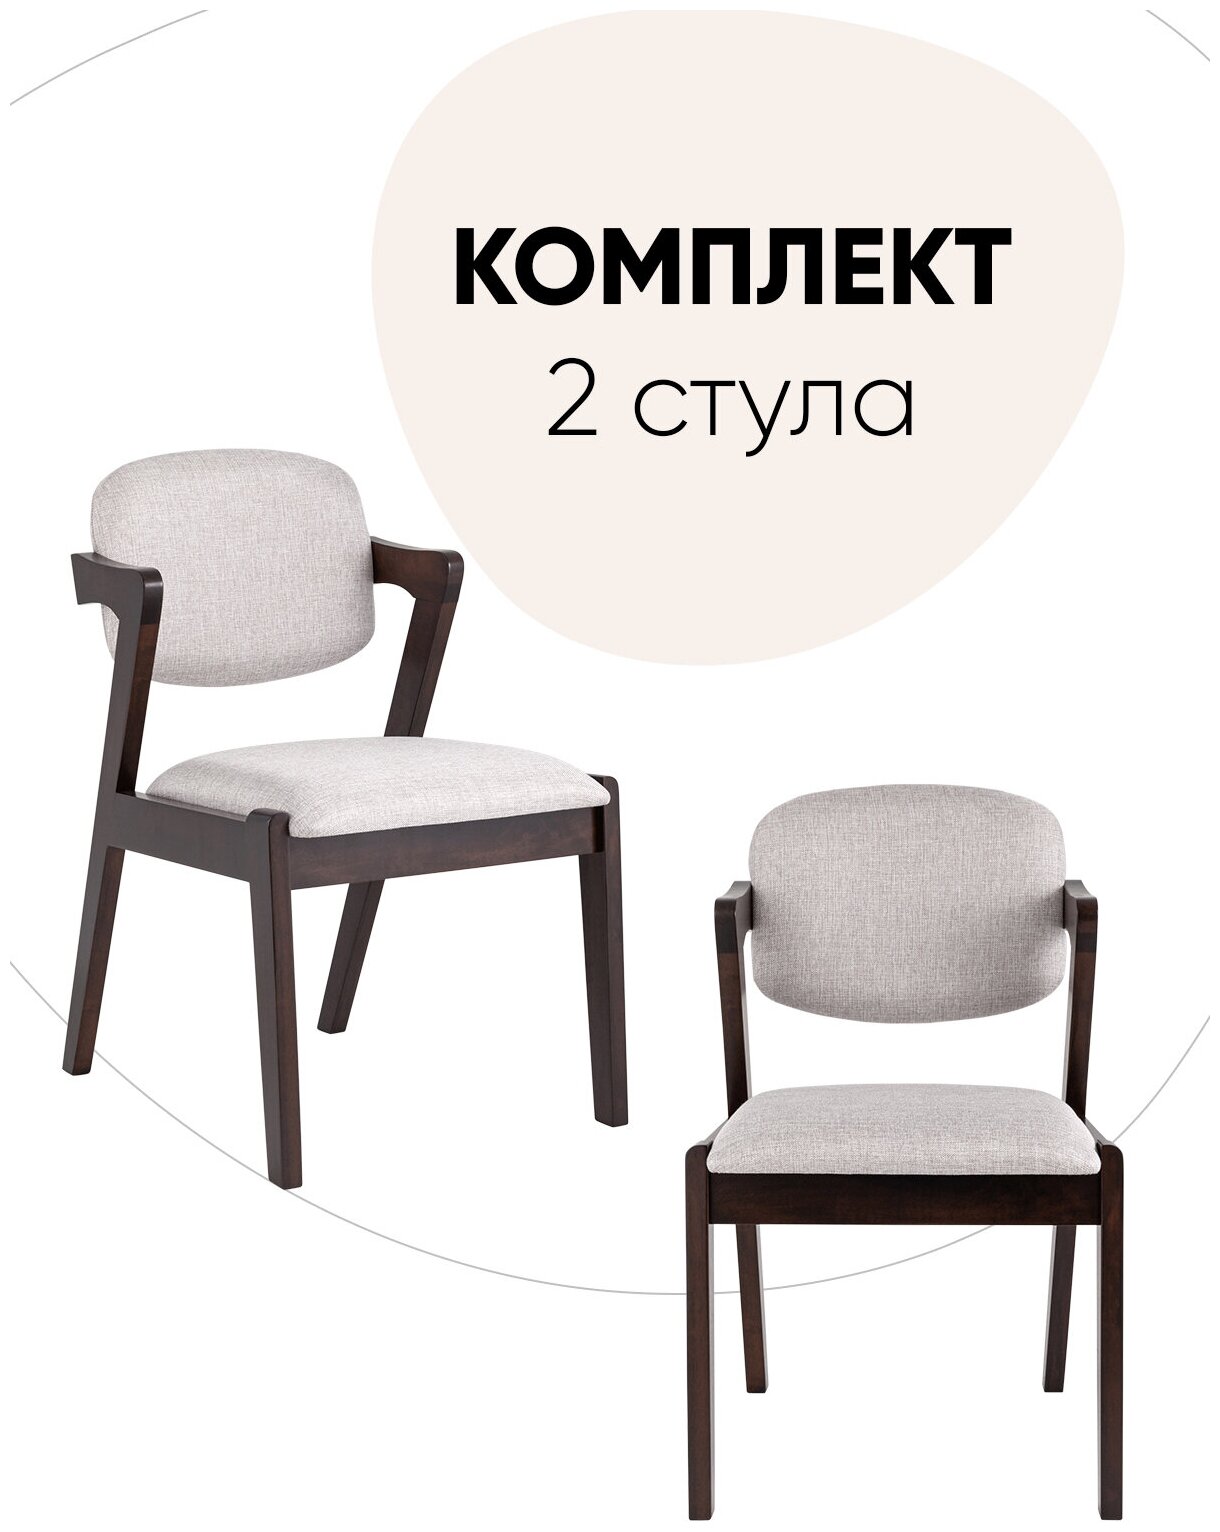 Комплект обеденных стульев 2 шт VIVA, массив гевеи (эспрессо), мягкое сидение, светло-серое